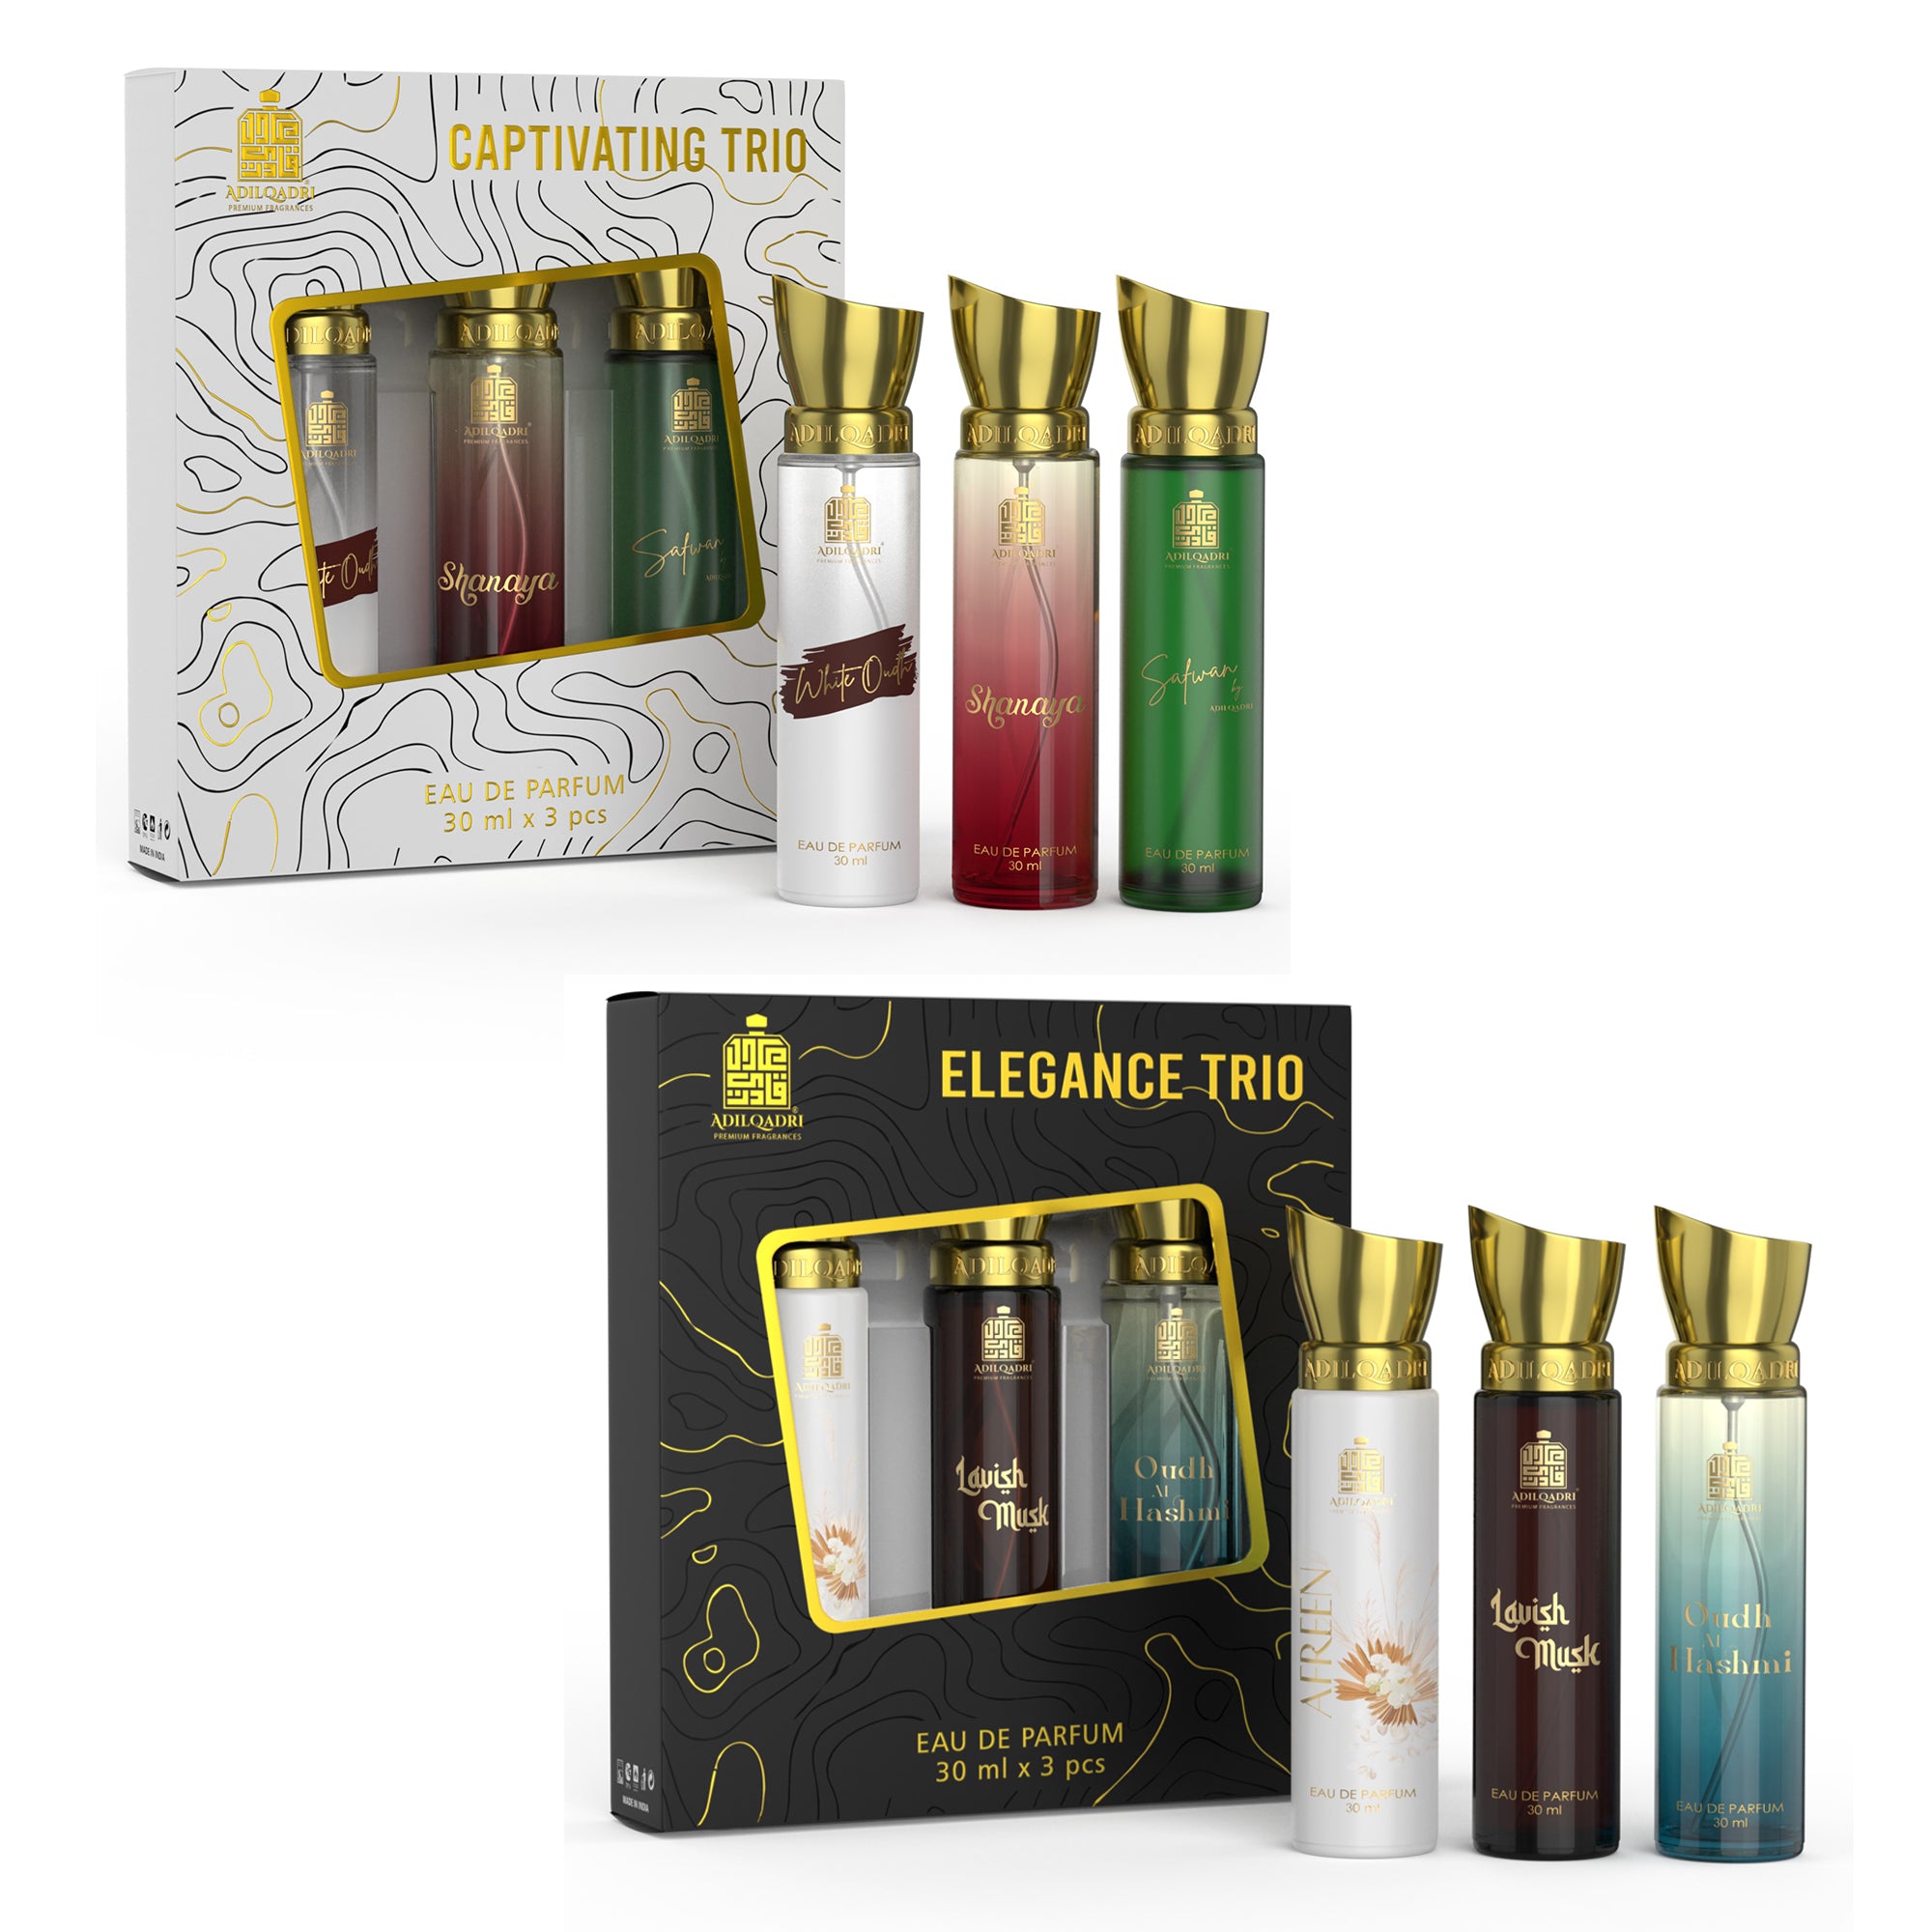 Pack Of 2 Captivating Trio And Elegance Trio Premium Perfume Spray 30ml x 6